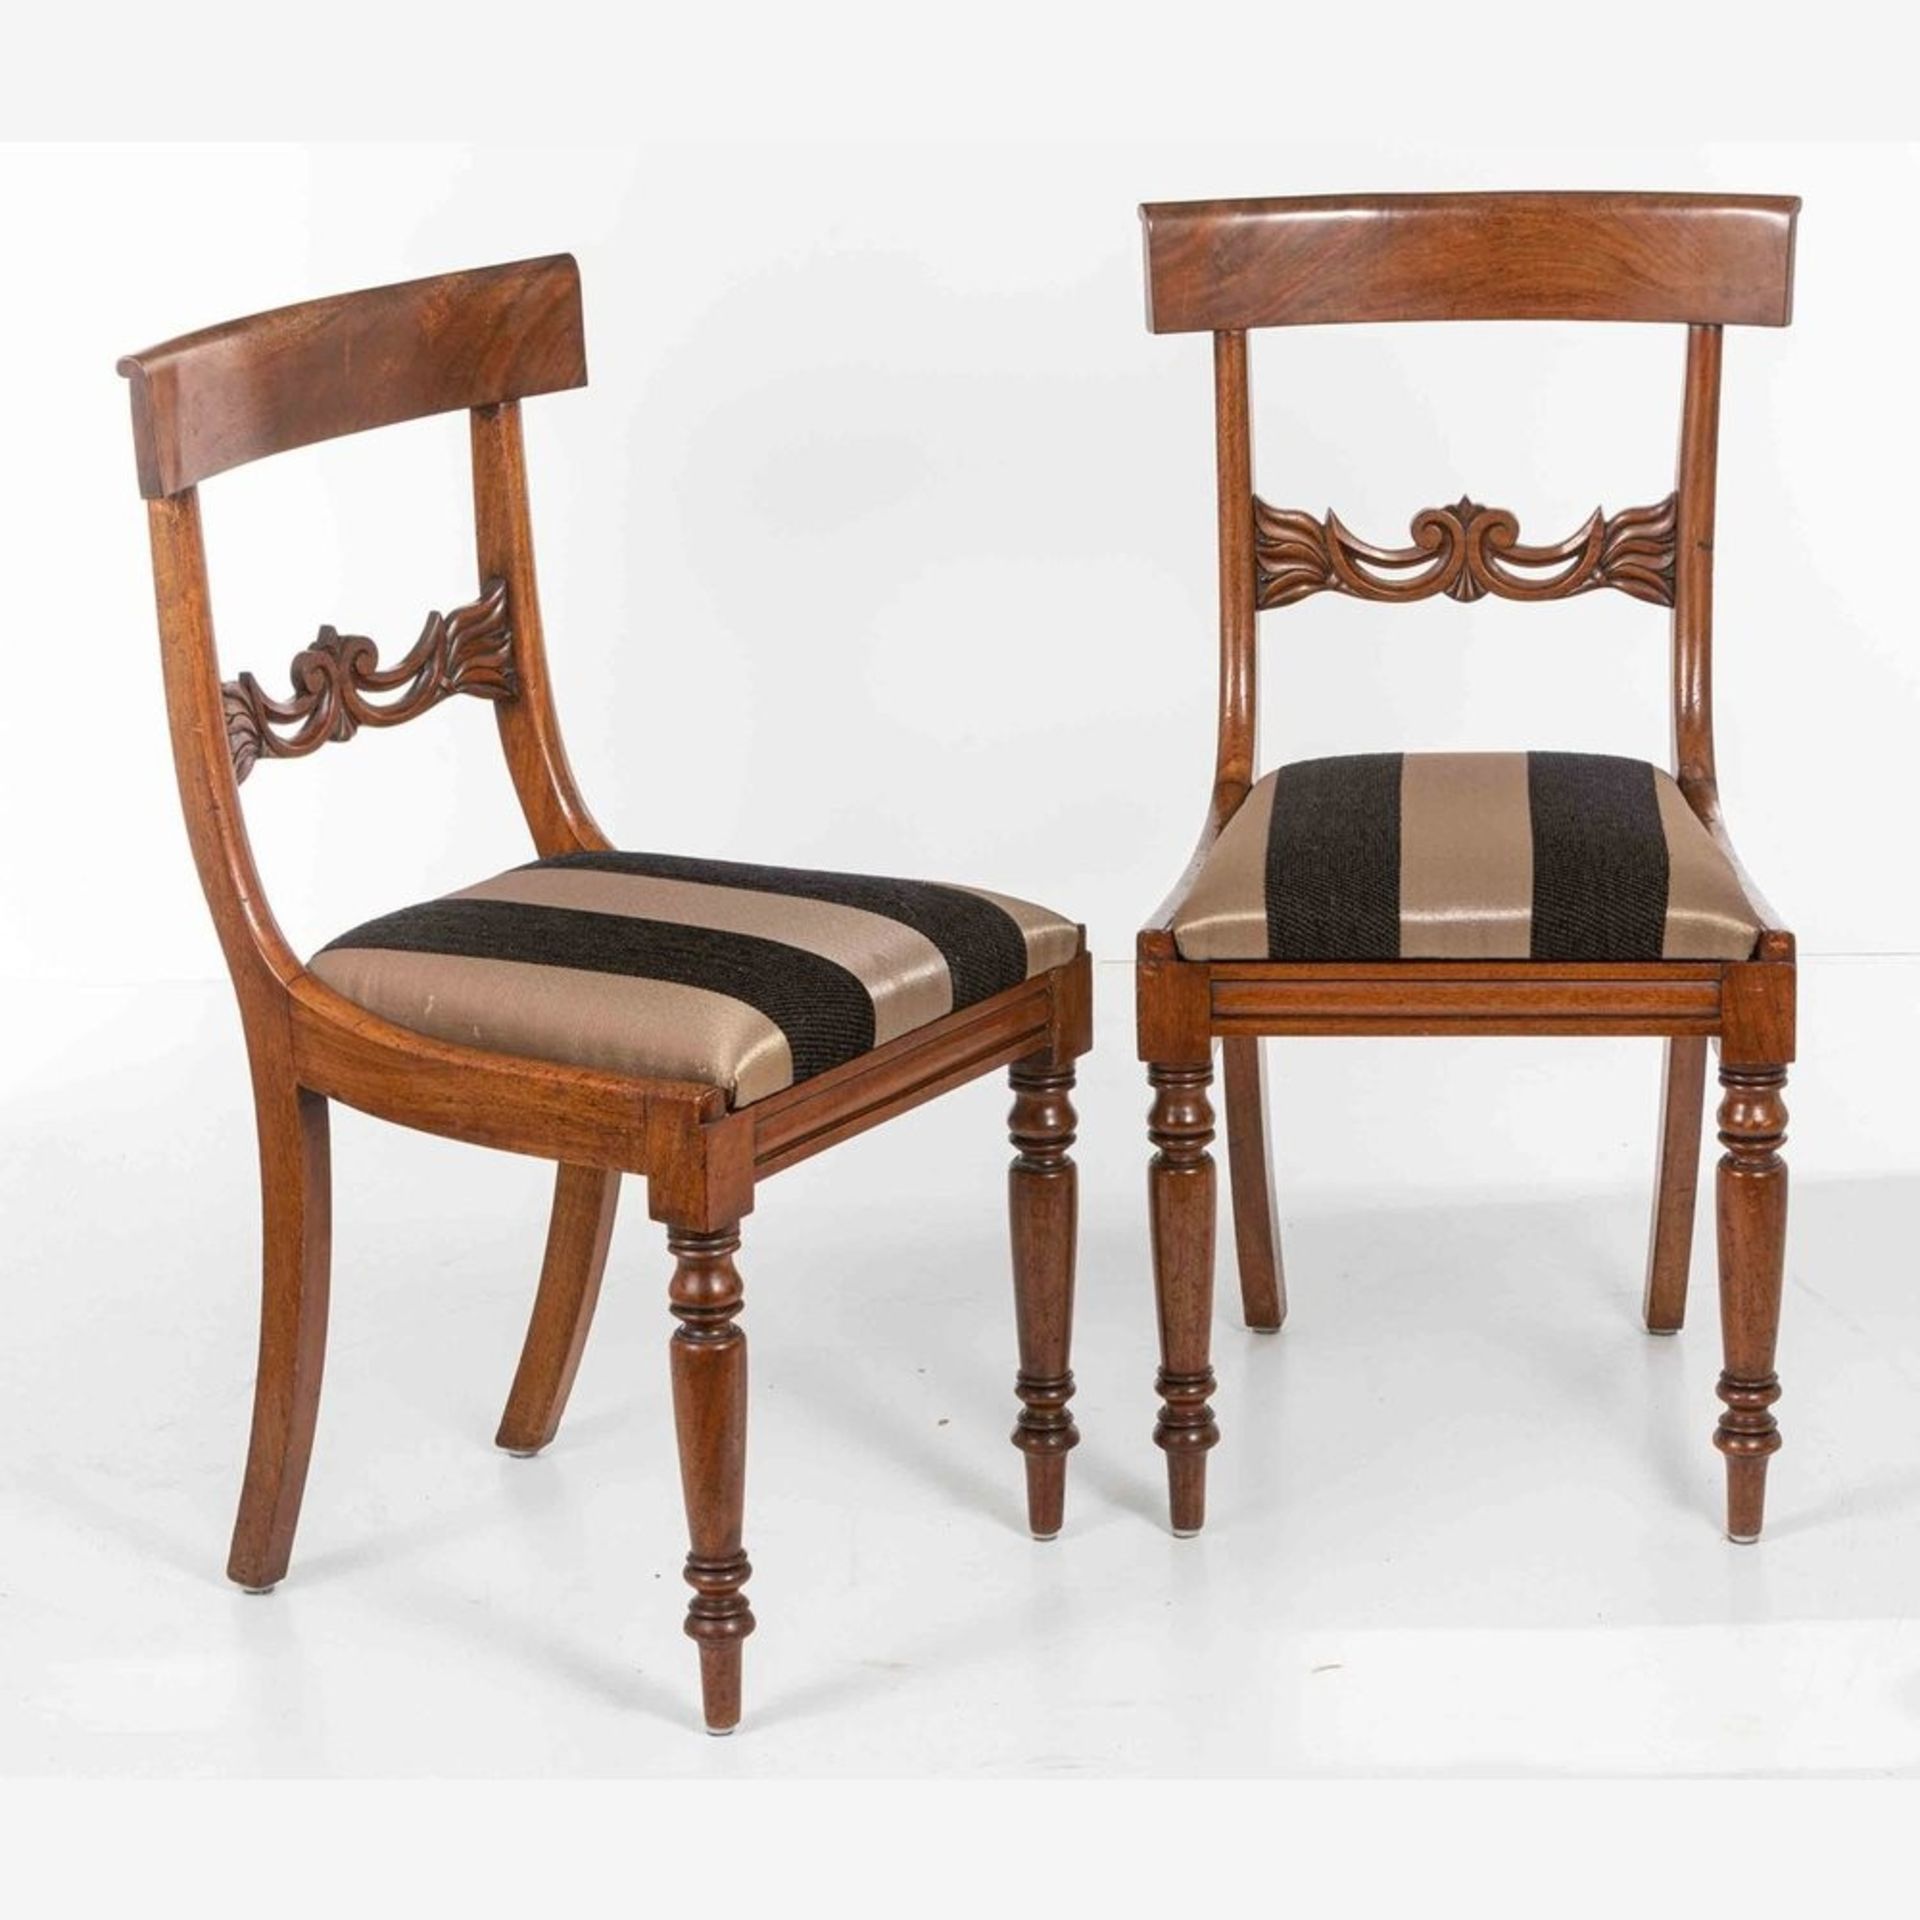 Zwei Viktorianische Stühle England, 2. H. 19. Jh.